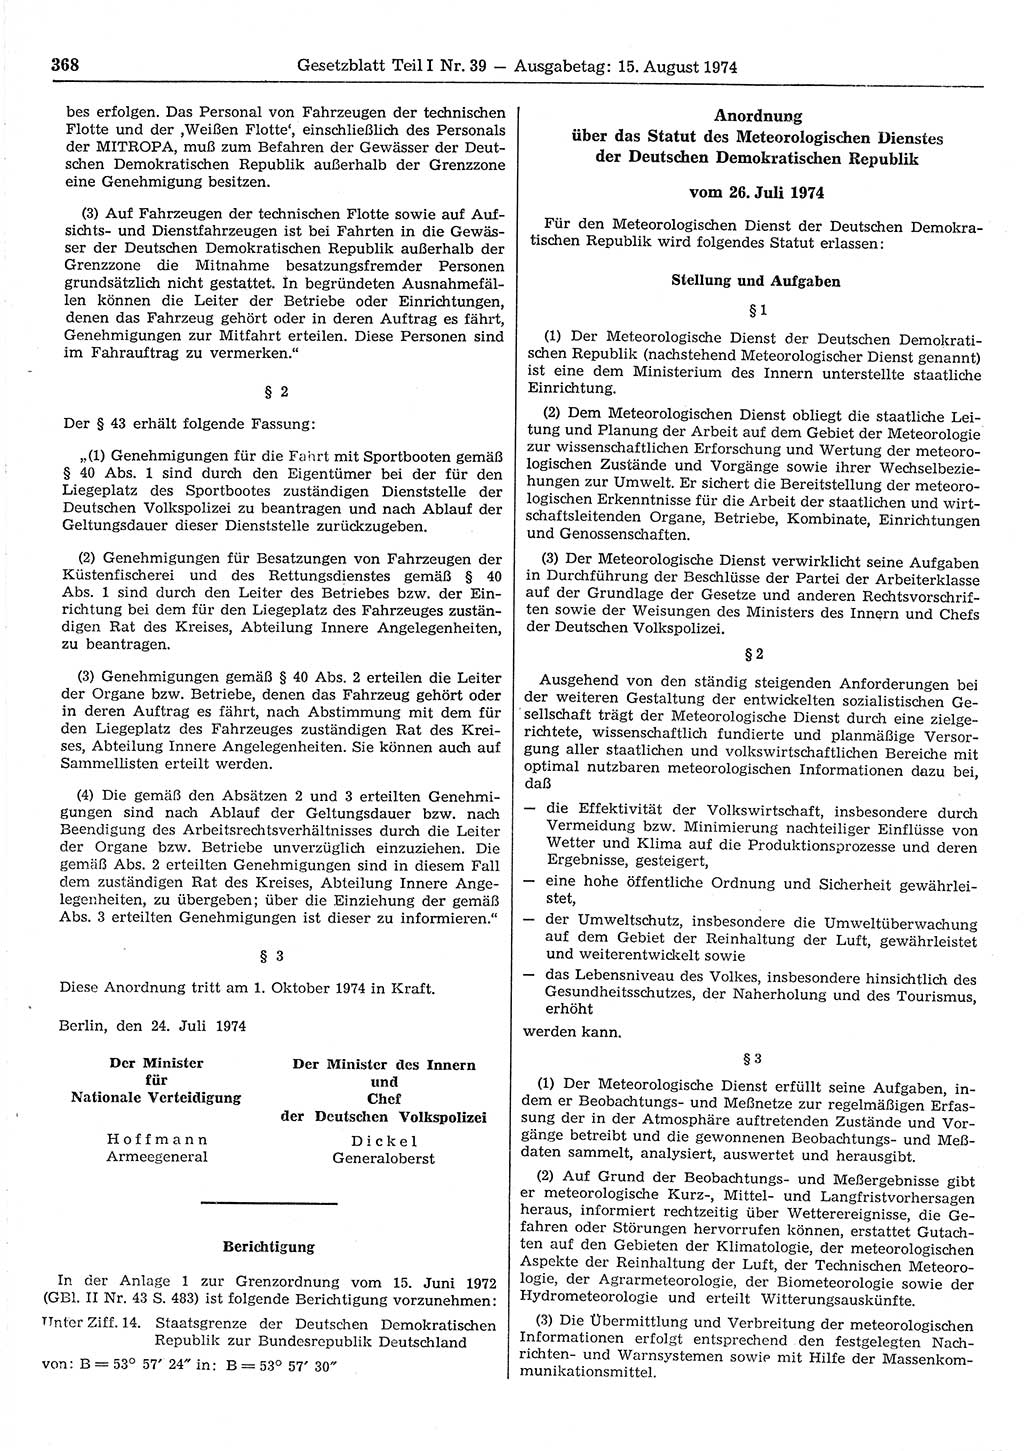 Gesetzblatt (GBl.) der Deutschen Demokratischen Republik (DDR) Teil Ⅰ 1974, Seite 368 (GBl. DDR Ⅰ 1974, S. 368)